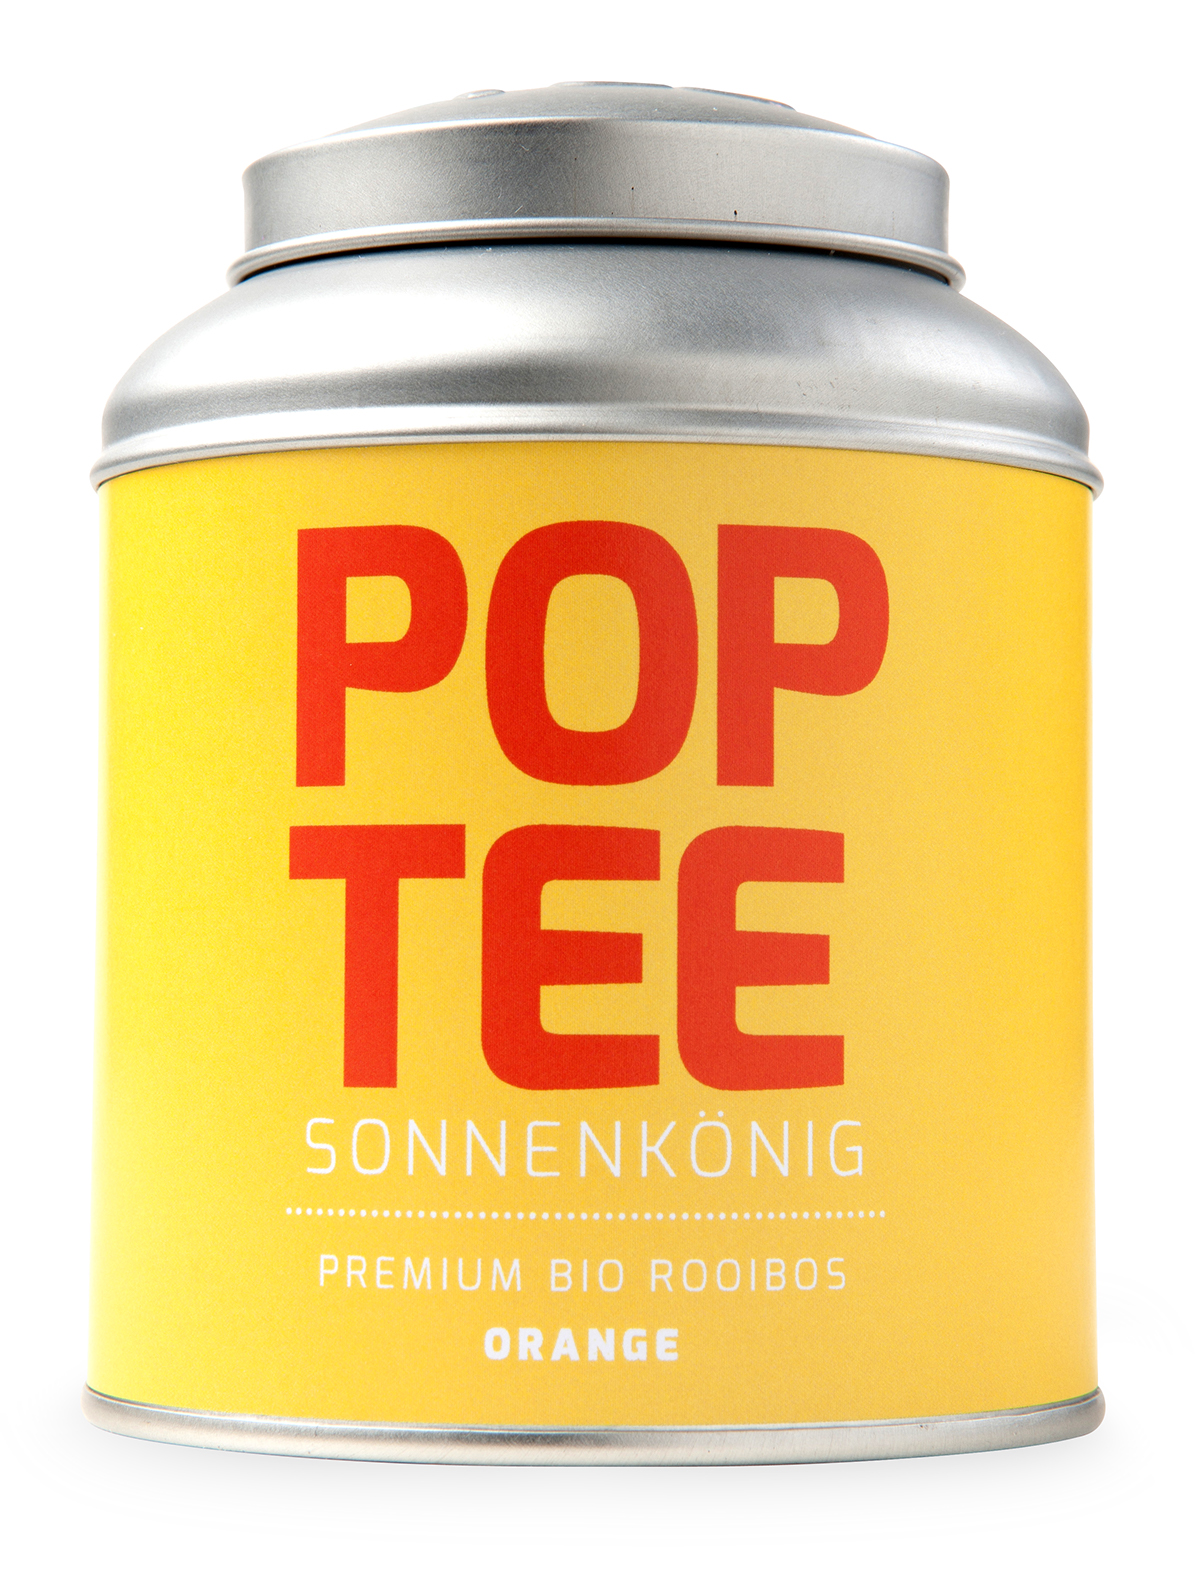 Pop Art pop tea tee verpackung design Pop Tea Bremen Pop Cultre color blocking louvre